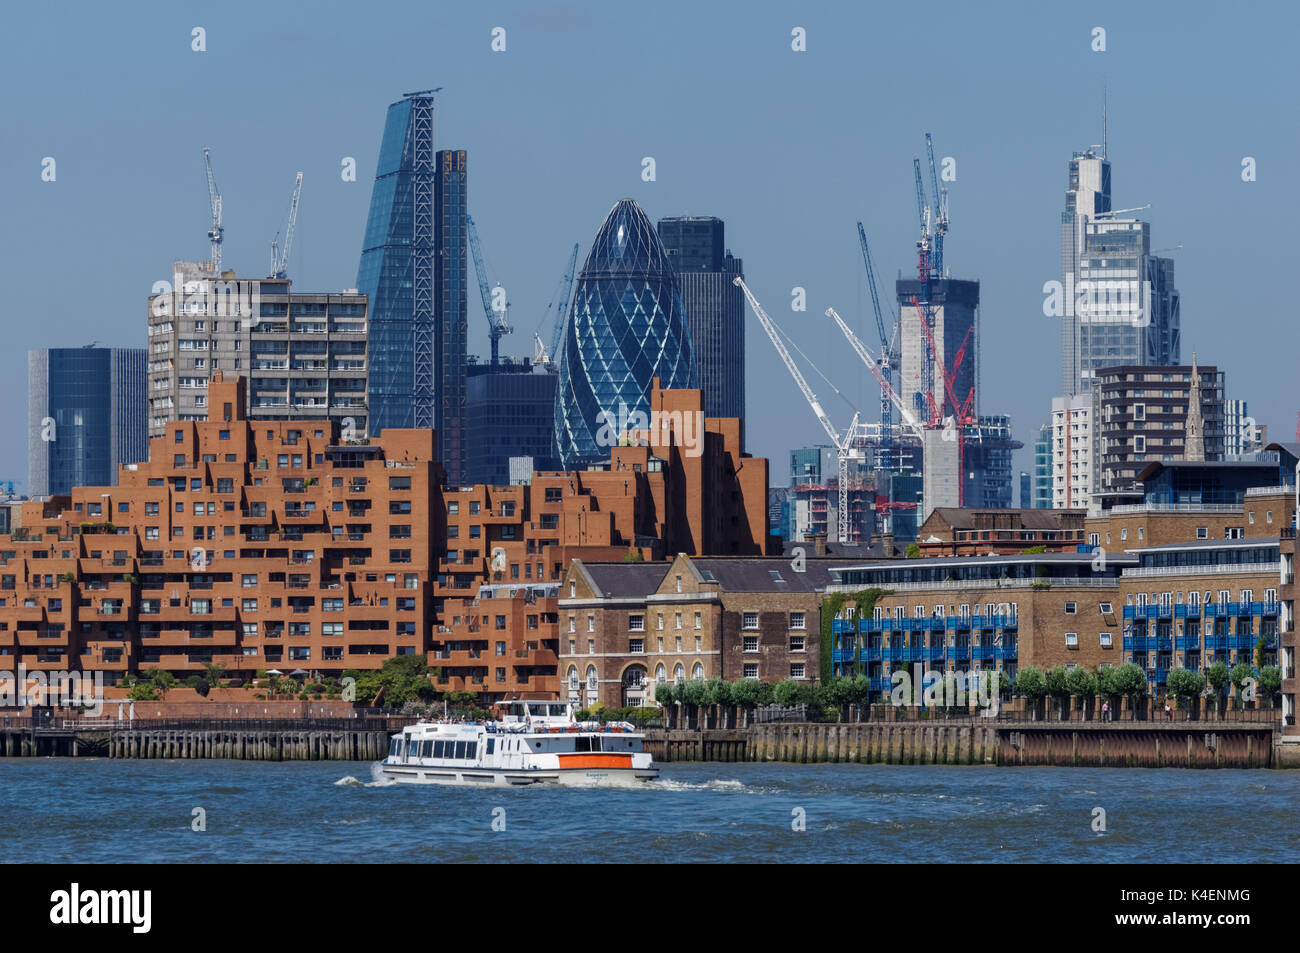 Bateau de croisière sur la Tamise, avec les gratte-ciel en arrière-plan, Londres, Angleterre, Royaume-Uni, UK Banque D'Images